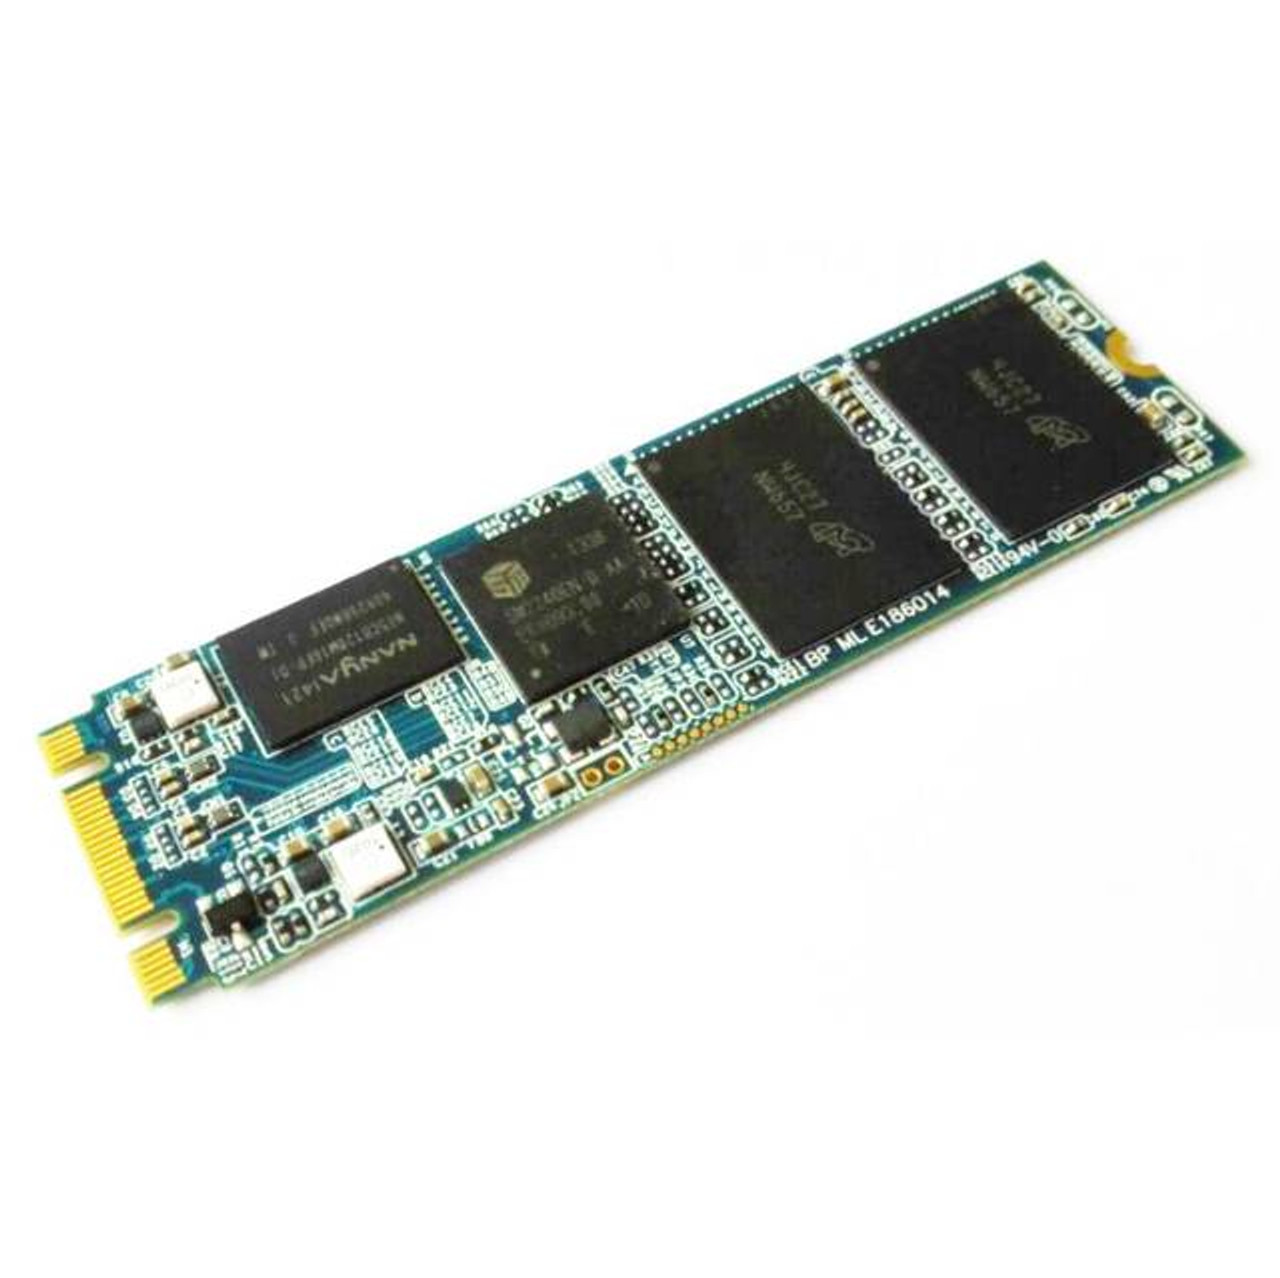 Super Talent NGFF DX2 64GB M.2 SATA3 Solid State Drive (MLC)